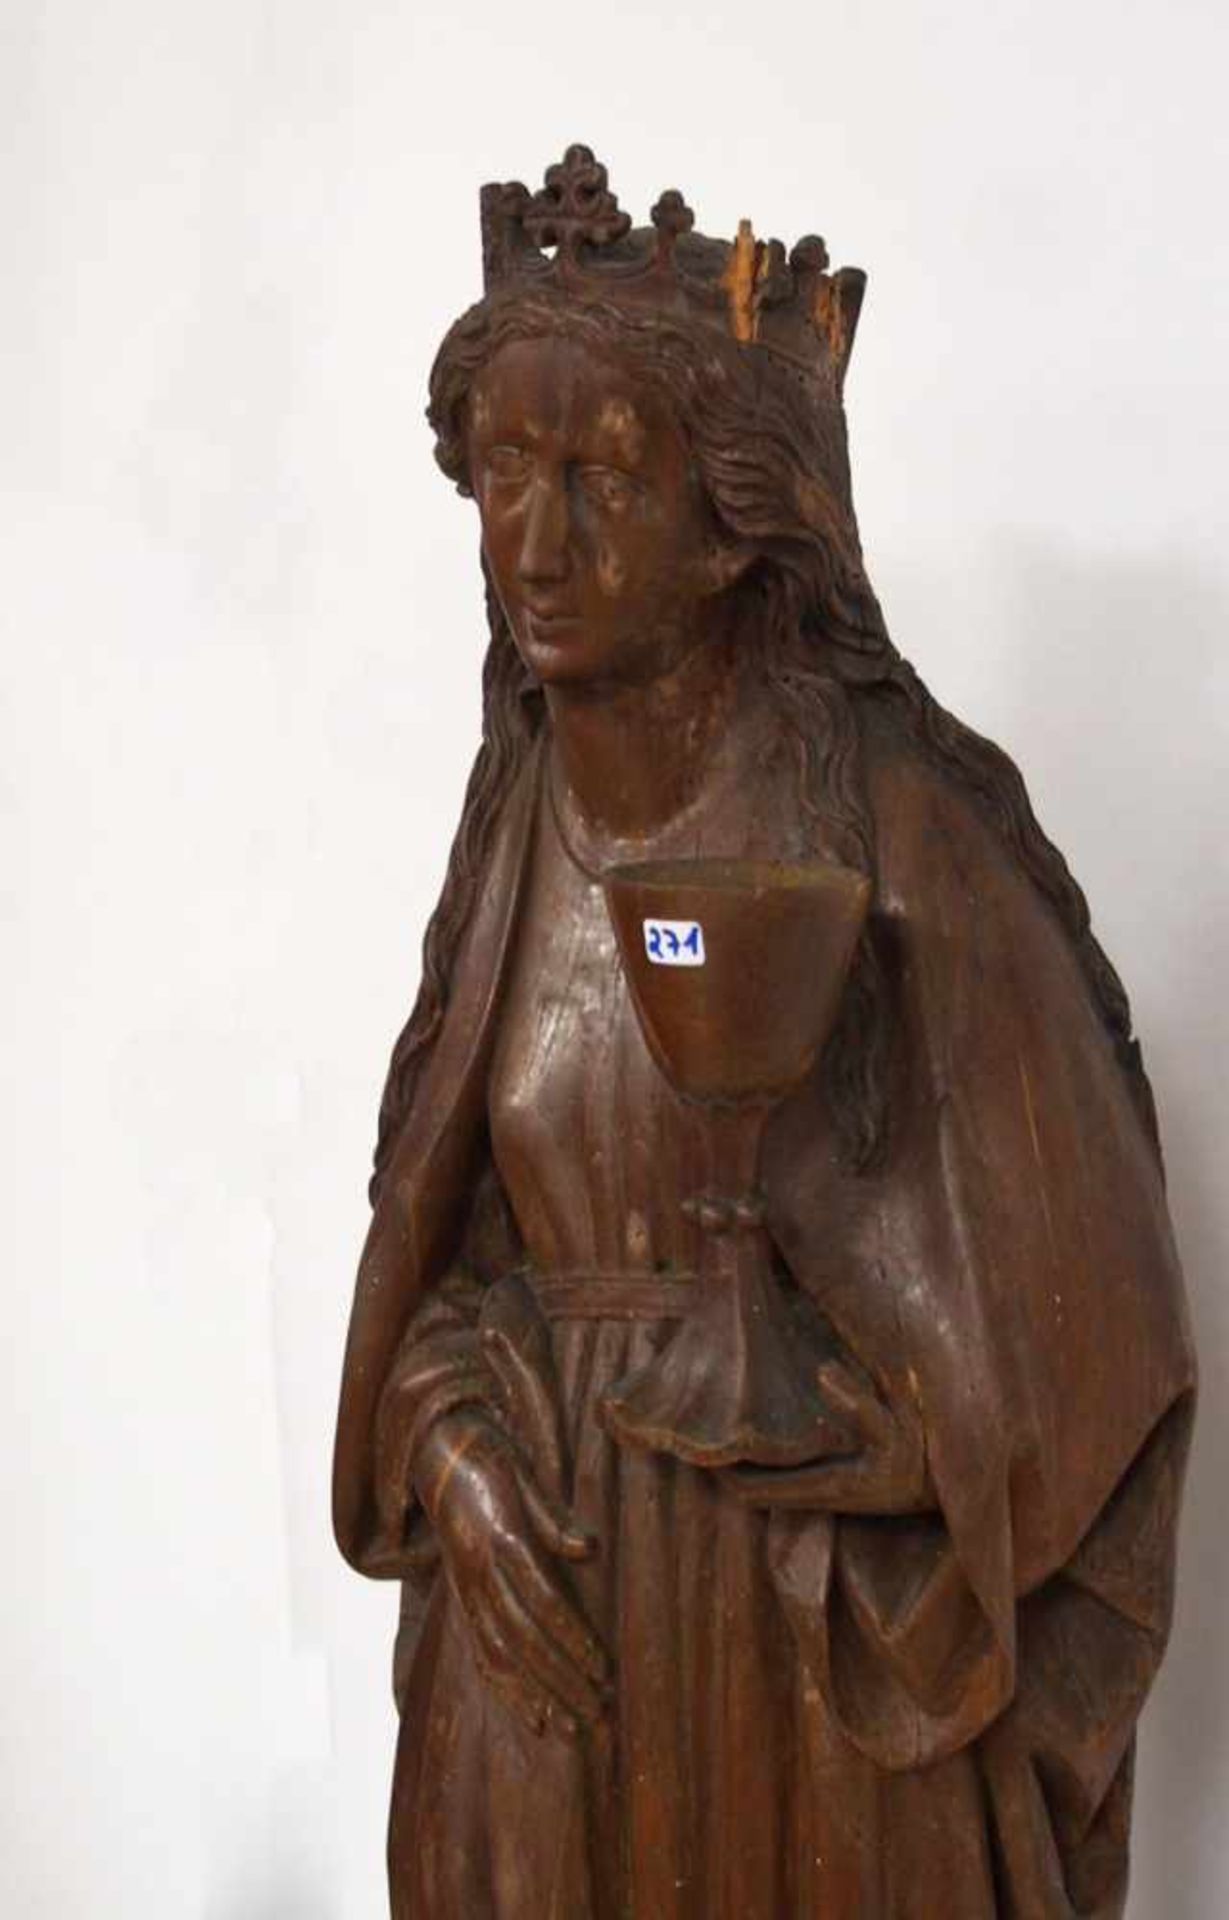 Heilige BarbaraHolz, geschnitzt, rückseitig gehöhlt, braun lasiert, Schwaben, um 1480, Höhe 91 cm (